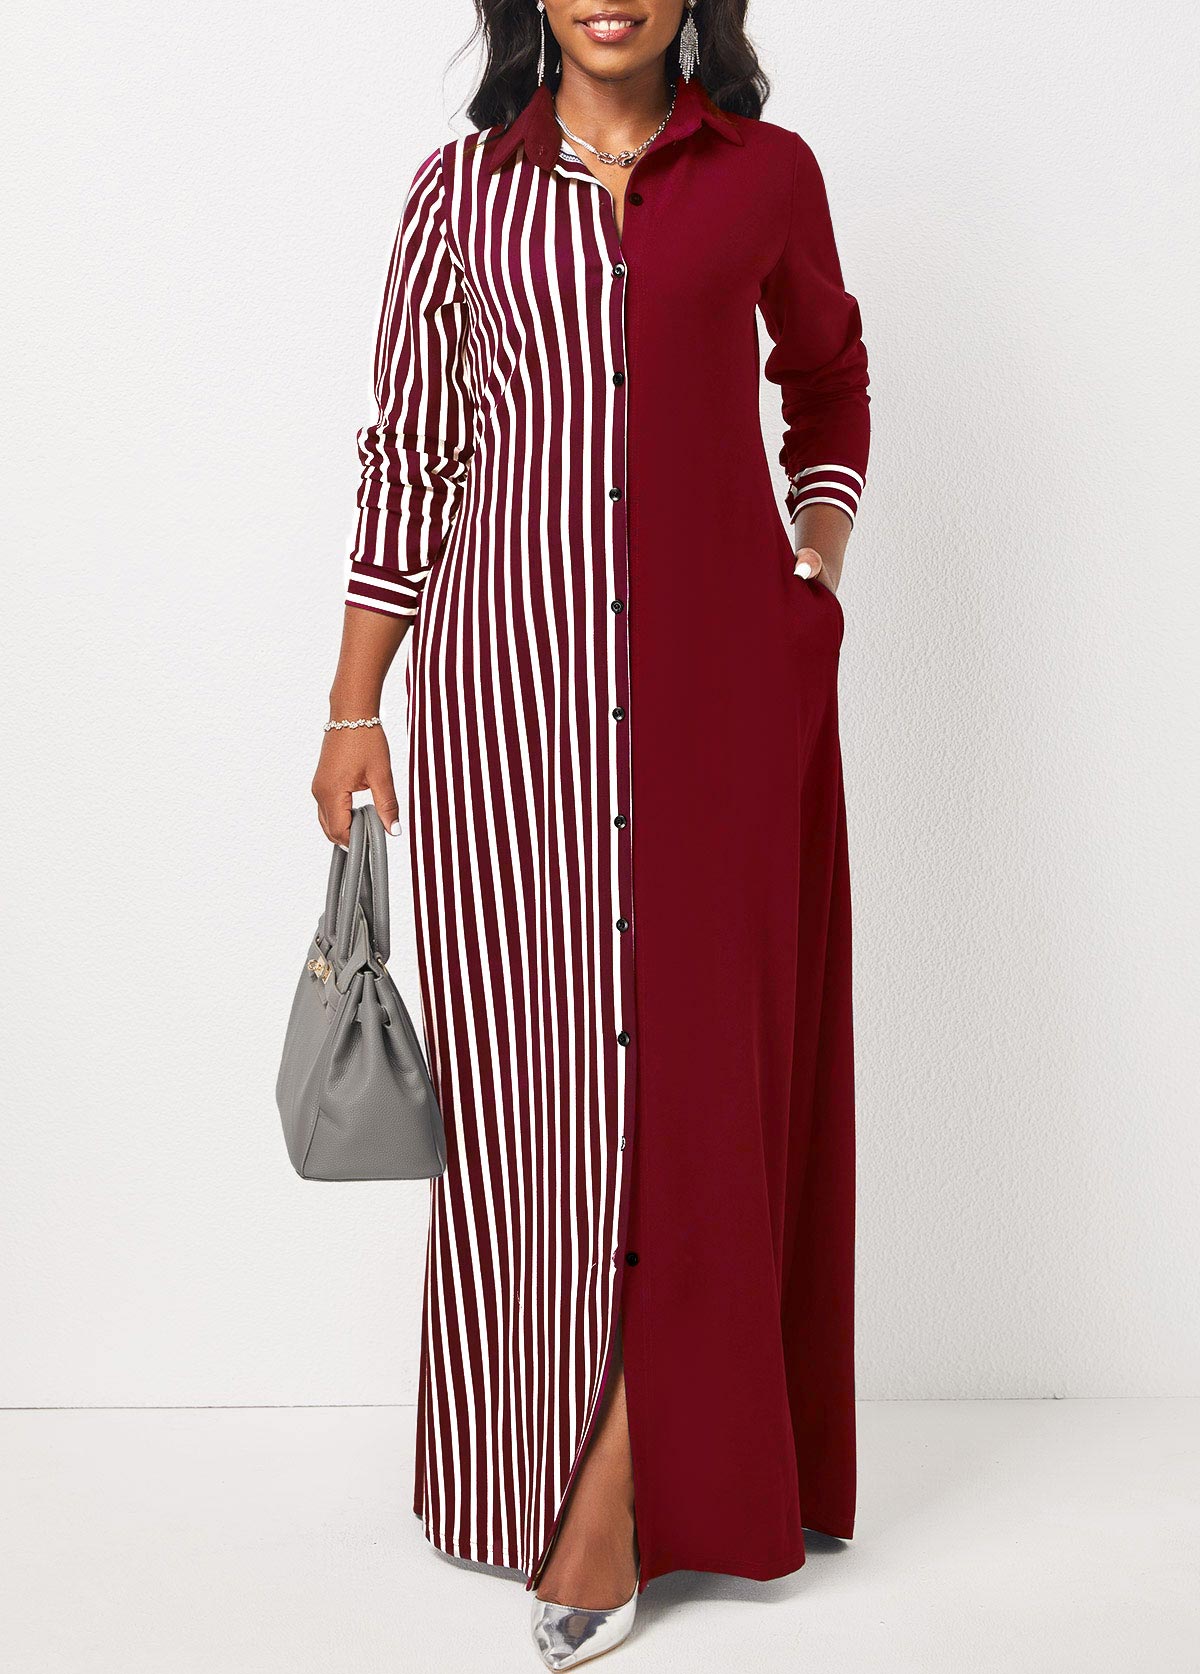 Wine Red Pocket Striped Maxi Dress